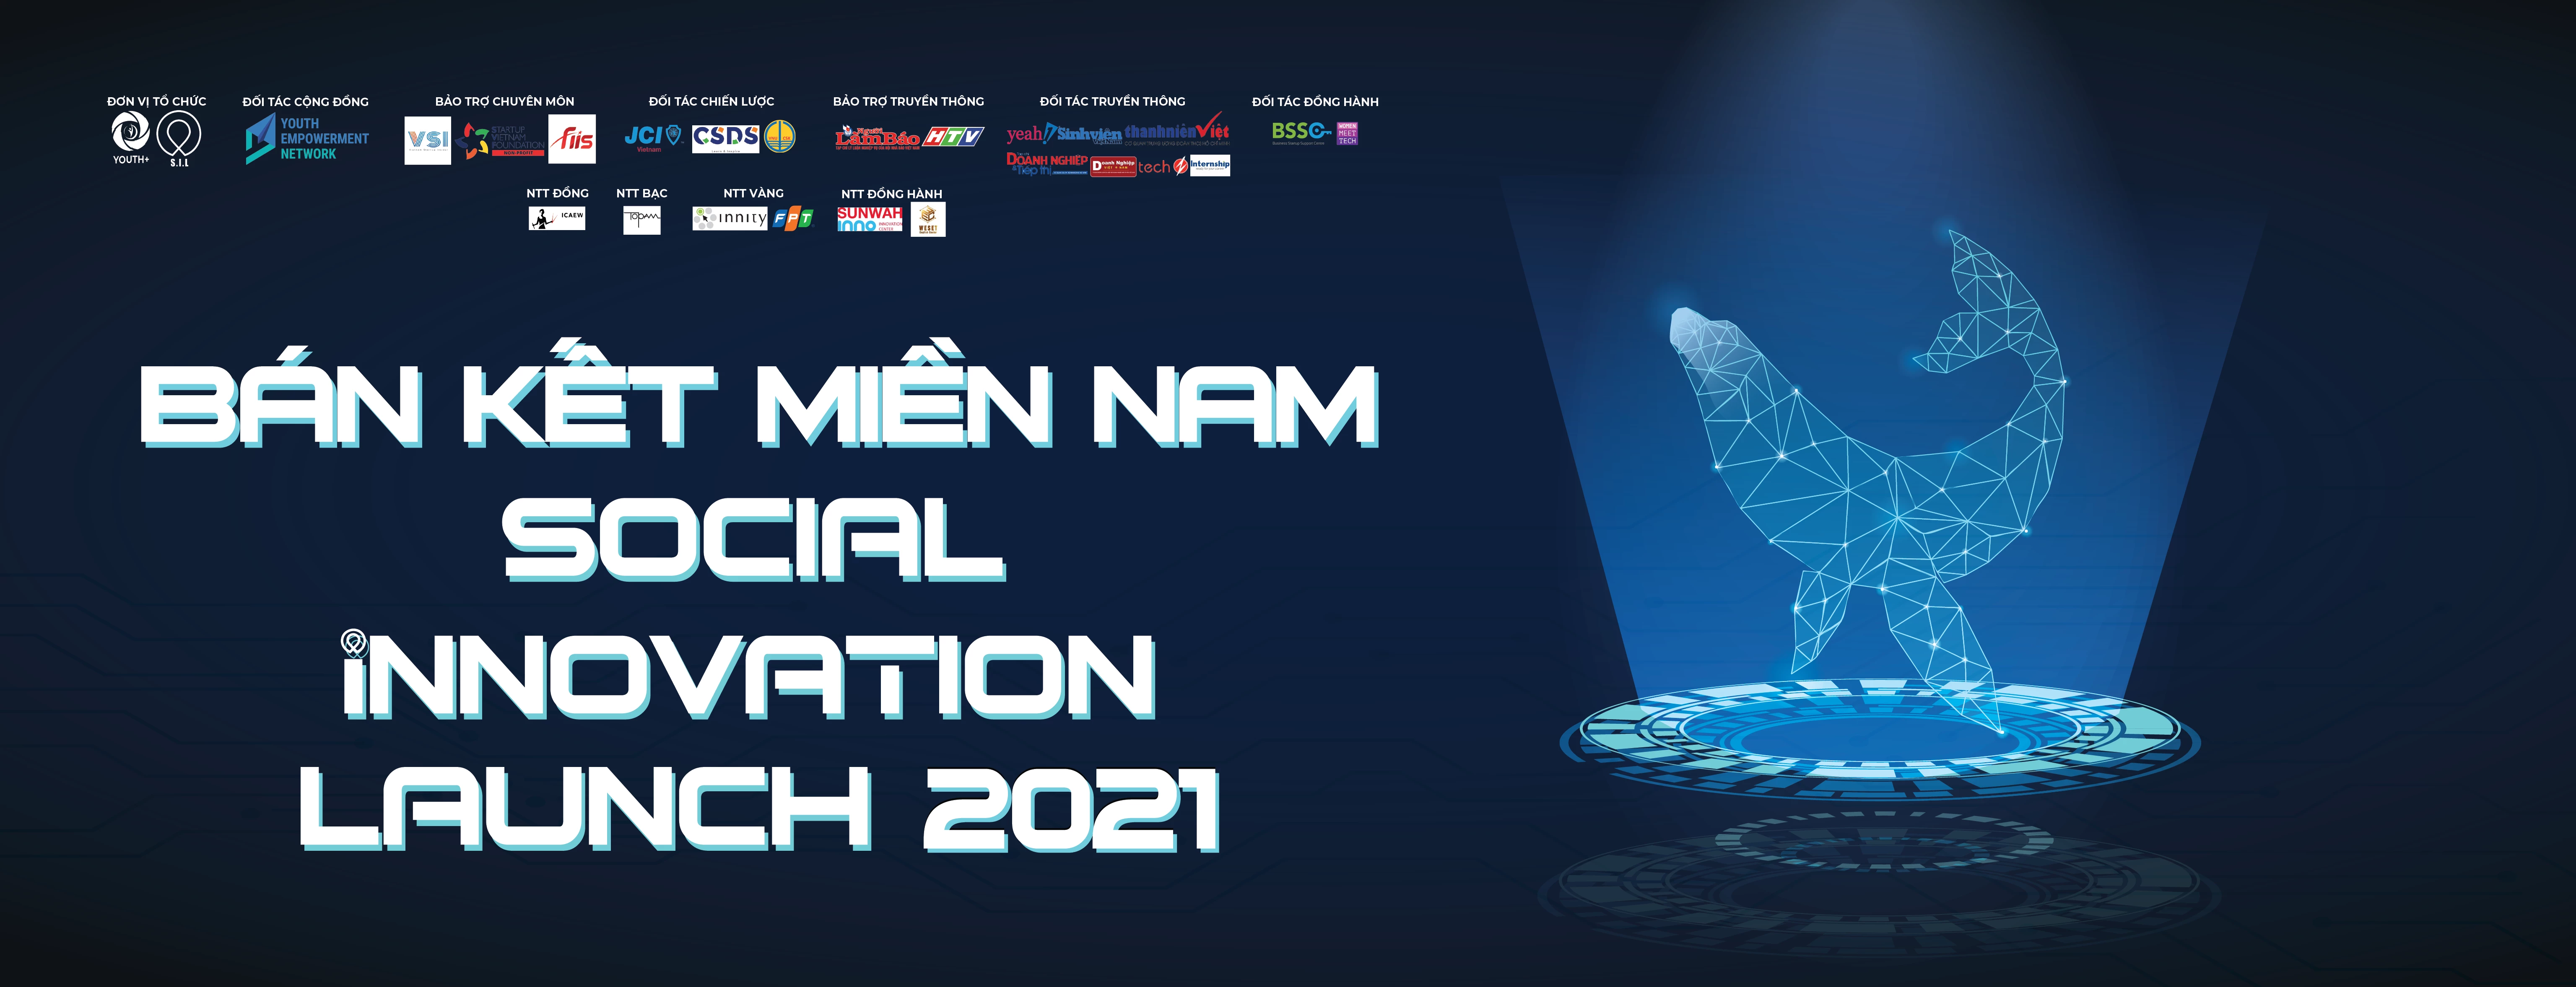 Bán kết cuộc thi “Social Innovation Launch 2021” khu vực Miền Nam đã kết thúc